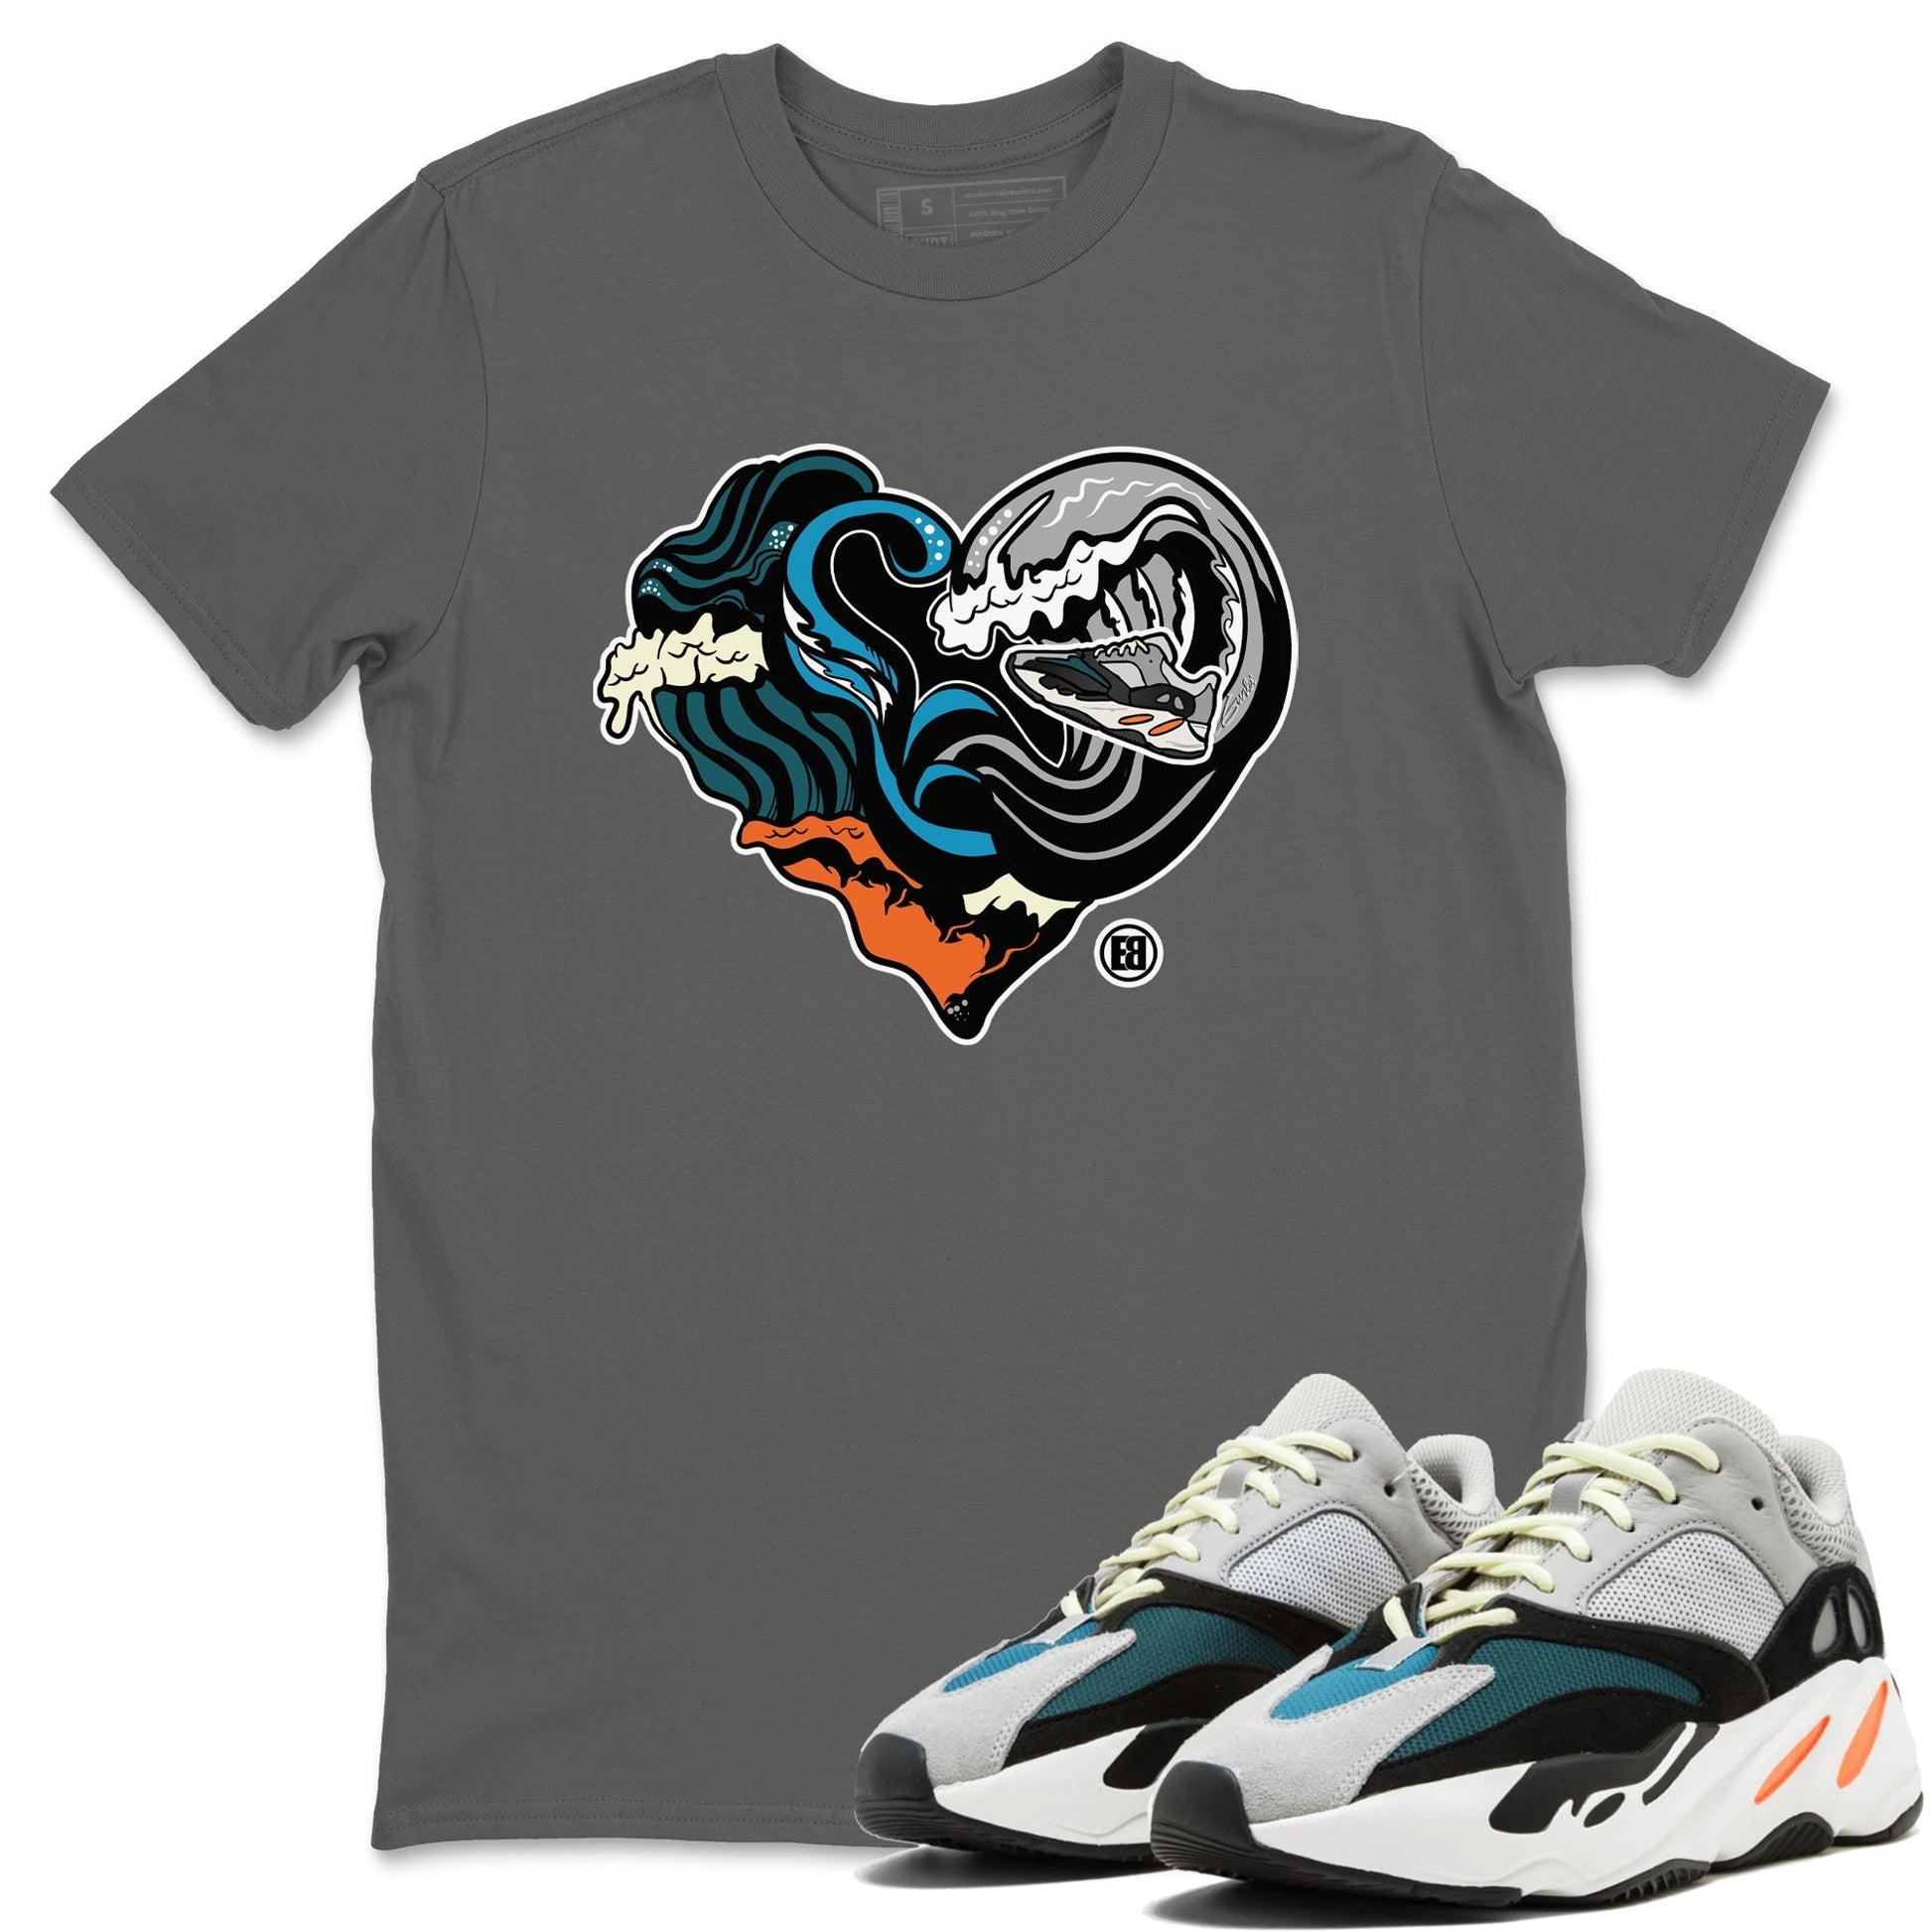 Yeezy 700 Wave Runner Sneaker Match Tees Ocean Love Sneaker Tees Yeezy 700 Wave Runner Sneaker Release Tees Unisex Shirts